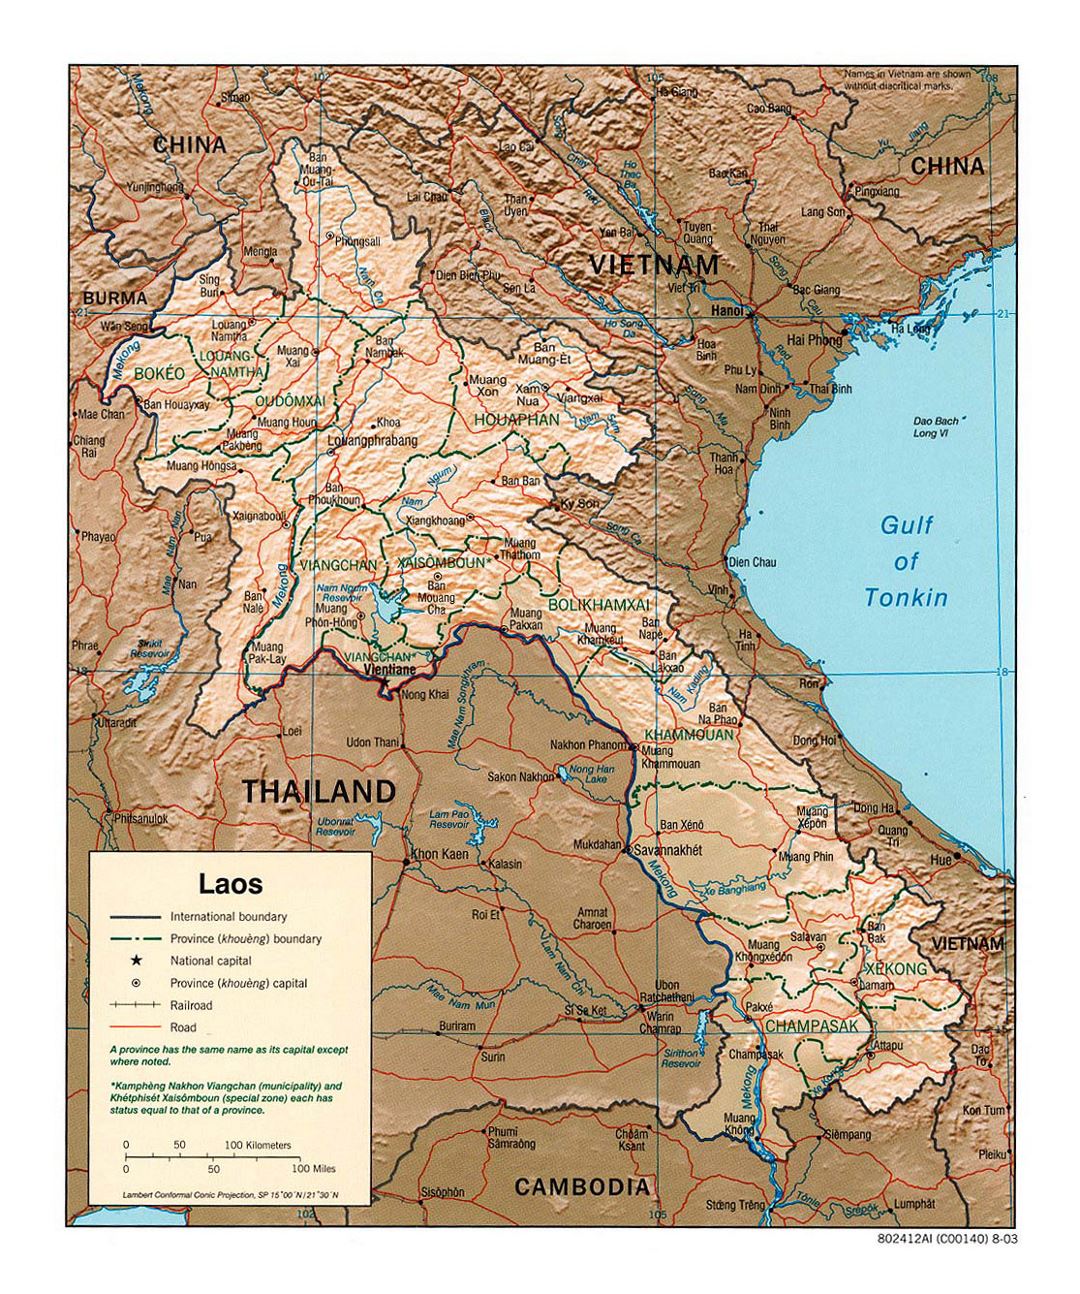 Detallado mapa político y administrativo de Laos con relieve, carreteras, ferrocarriles y principales ciudades - 2003